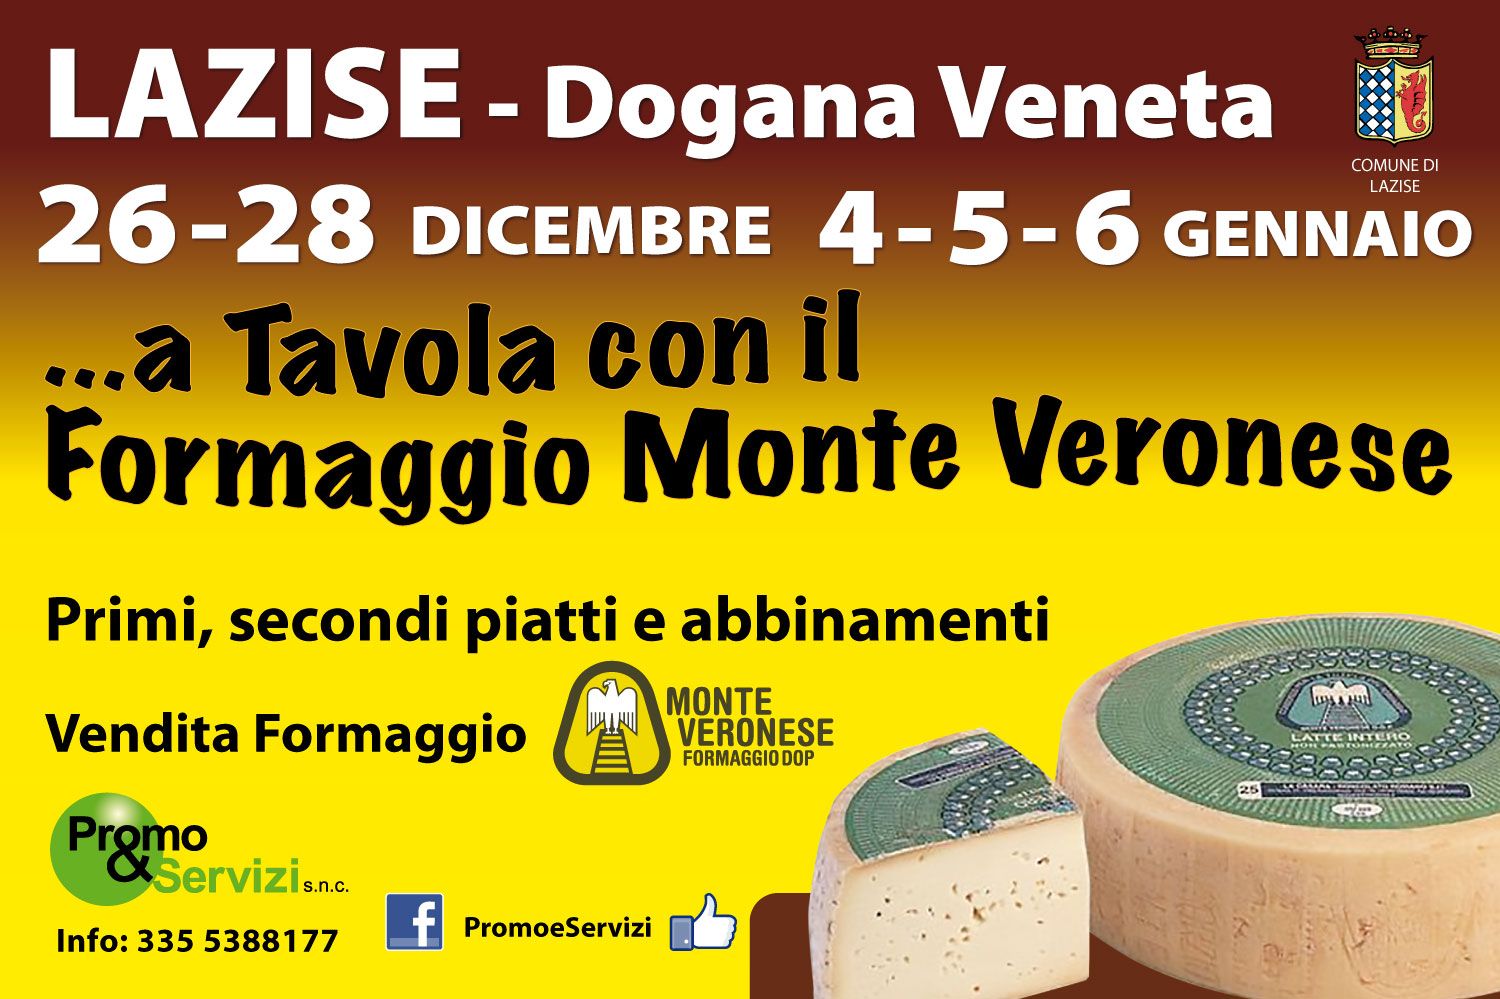 A Tavola con il Formaggio Monte Veronese 2014